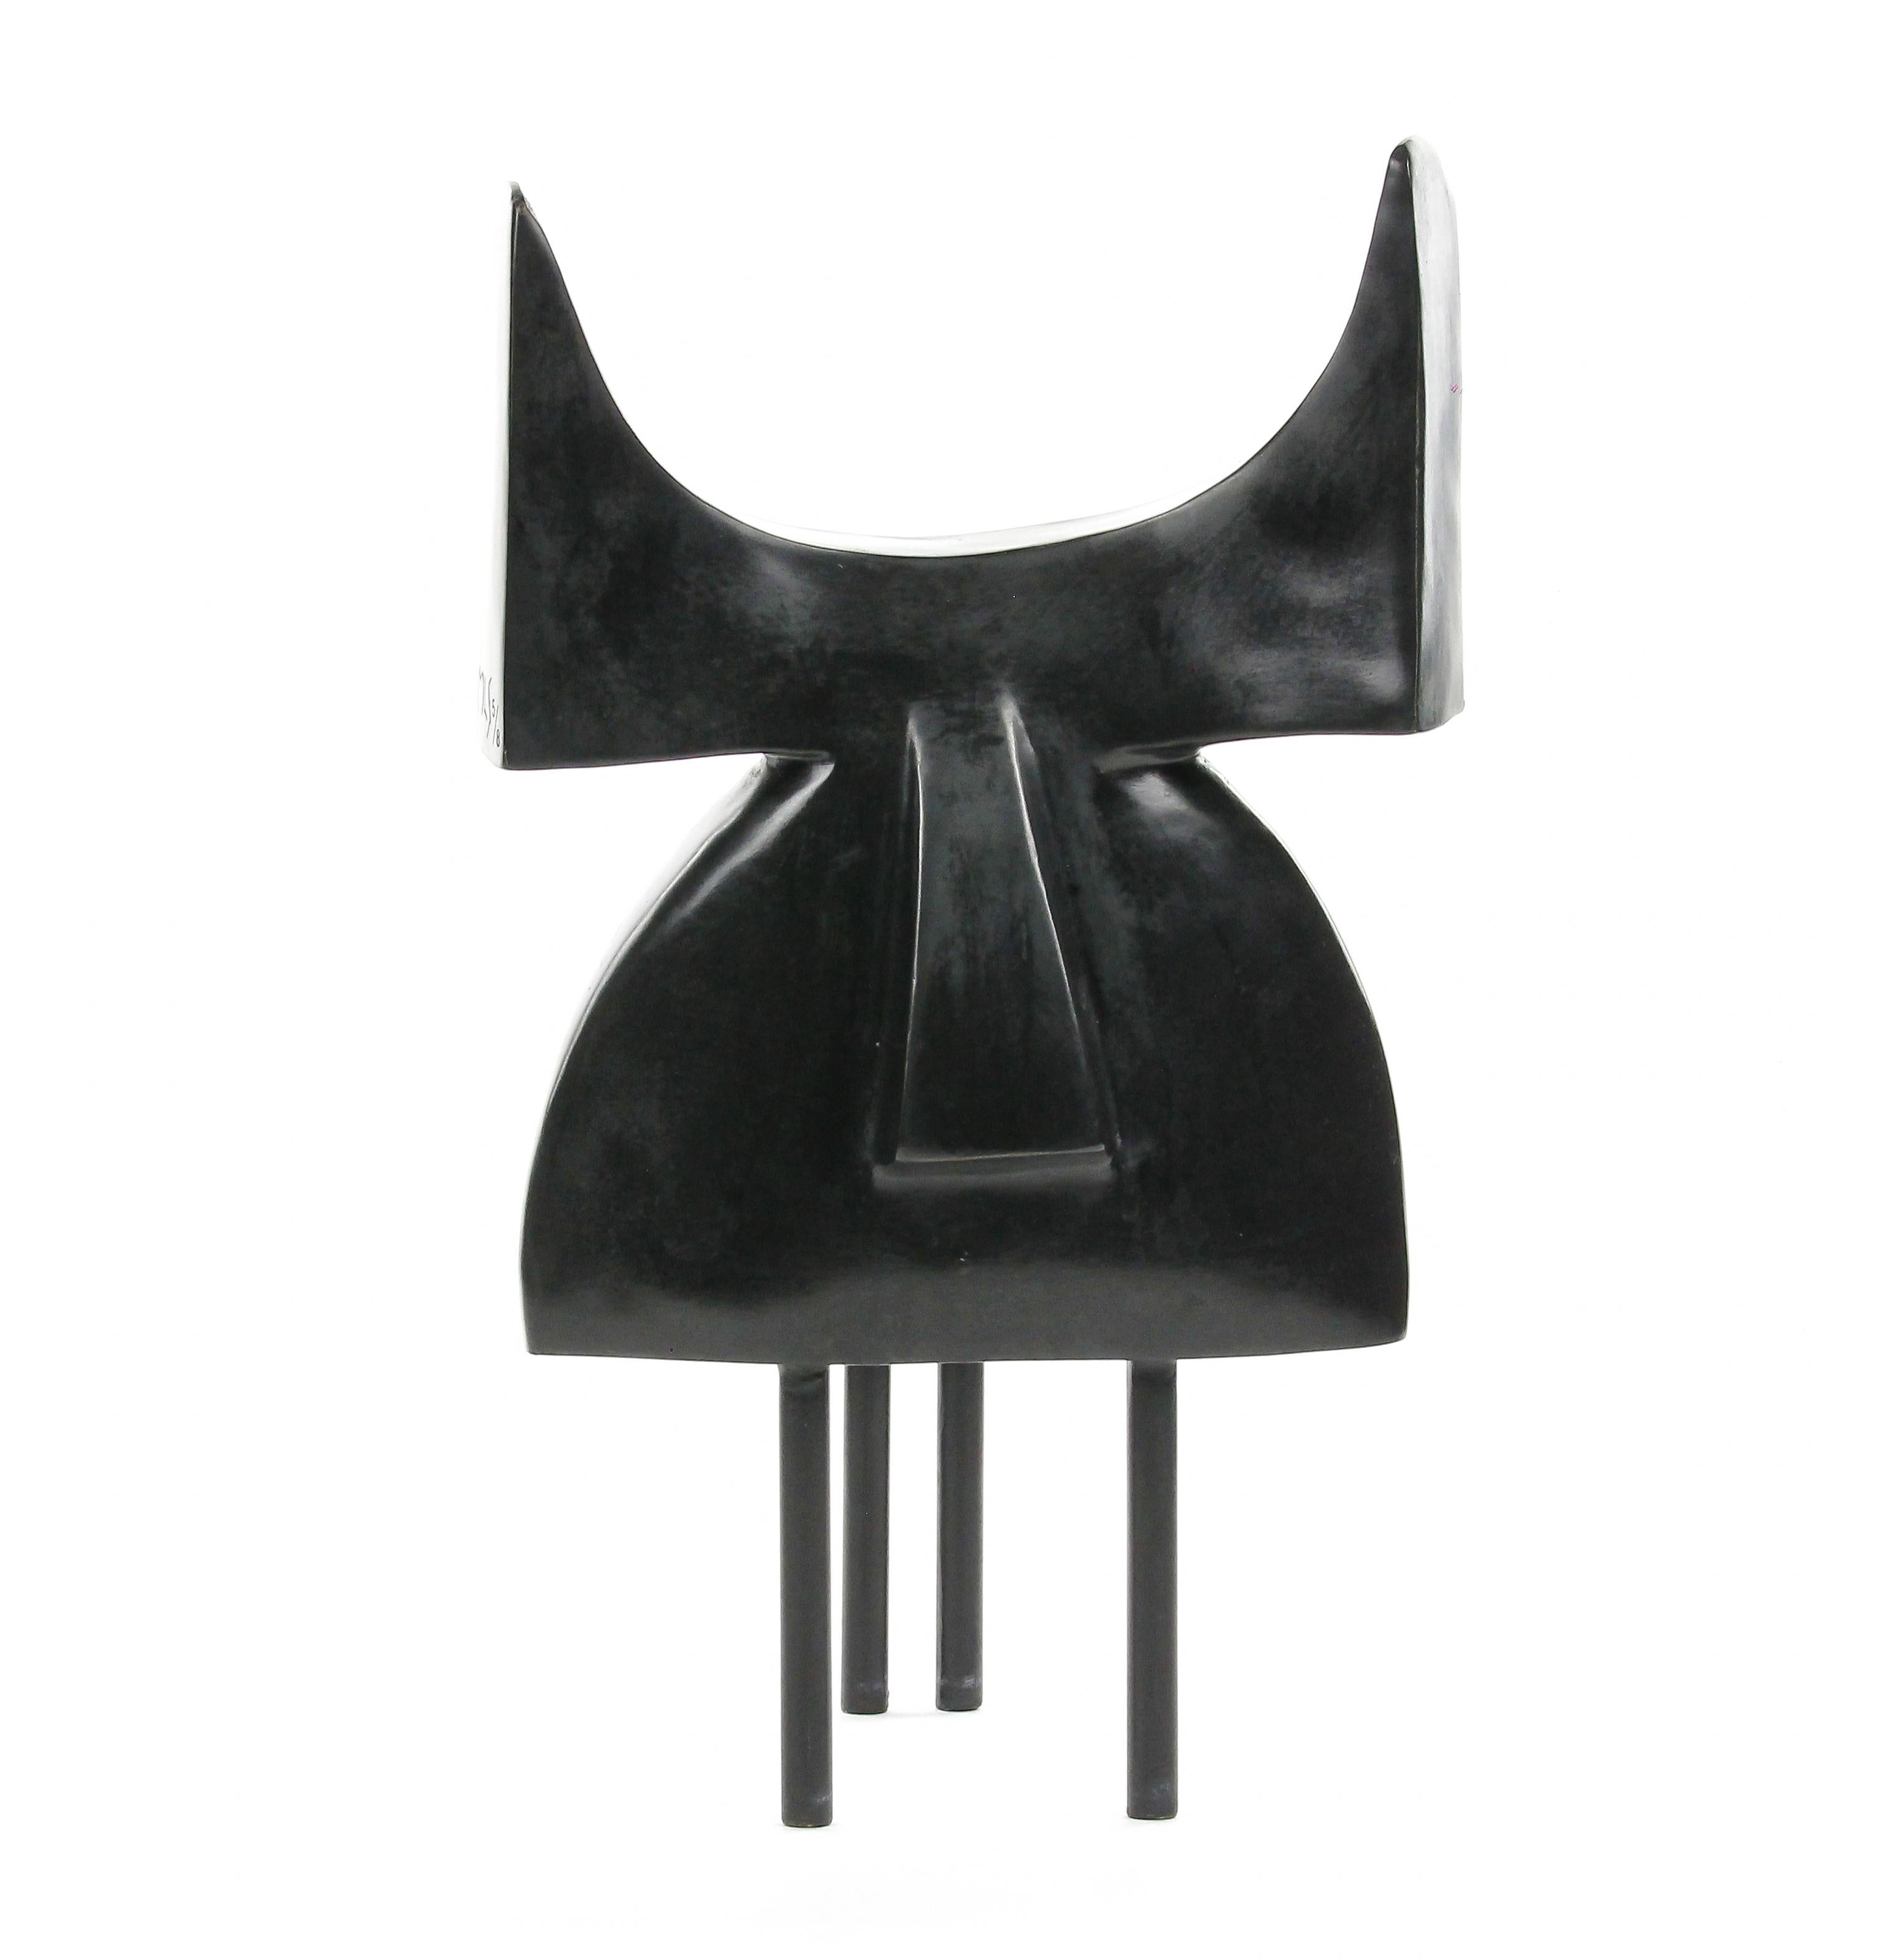 Pablo est une sculpture en bronze de l'artiste contemporaine française Marie Louise Sorbac, dont les dimensions sont de 31 × 18 × 25 cm (12,2 × 7,1 × 9,8 in). 
La sculpture est signée et numérotée, elle fait partie d'une édition limitée à 24